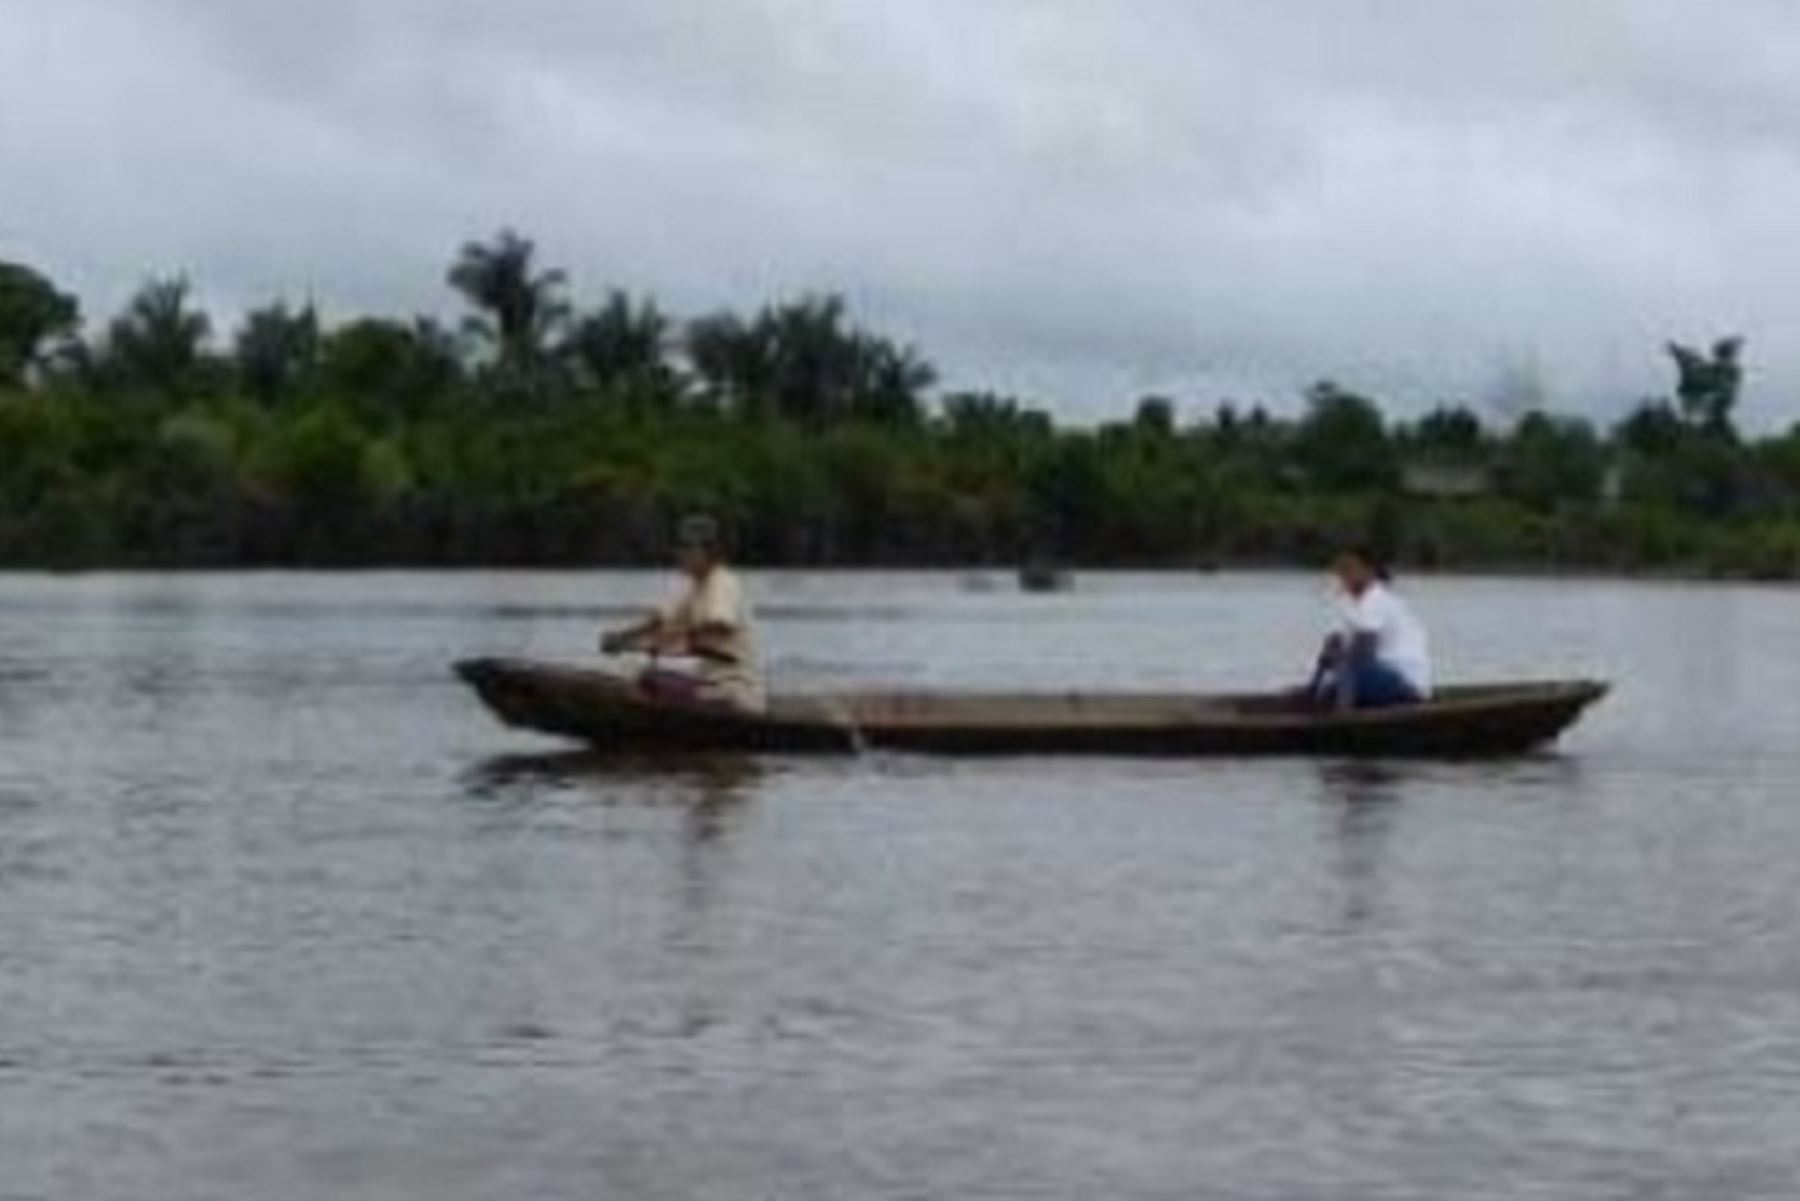 La alerta hidrológica de los ríos Amazonas y Ucayali se mantiene en amarilla ante la disminución de lluvias en algunas zonas localizadas de la selva, informó la Dirección Zonal 8 del Servicio Nacional de Meteorología e Hidrología (Senamhi). ANDINA/Difusión